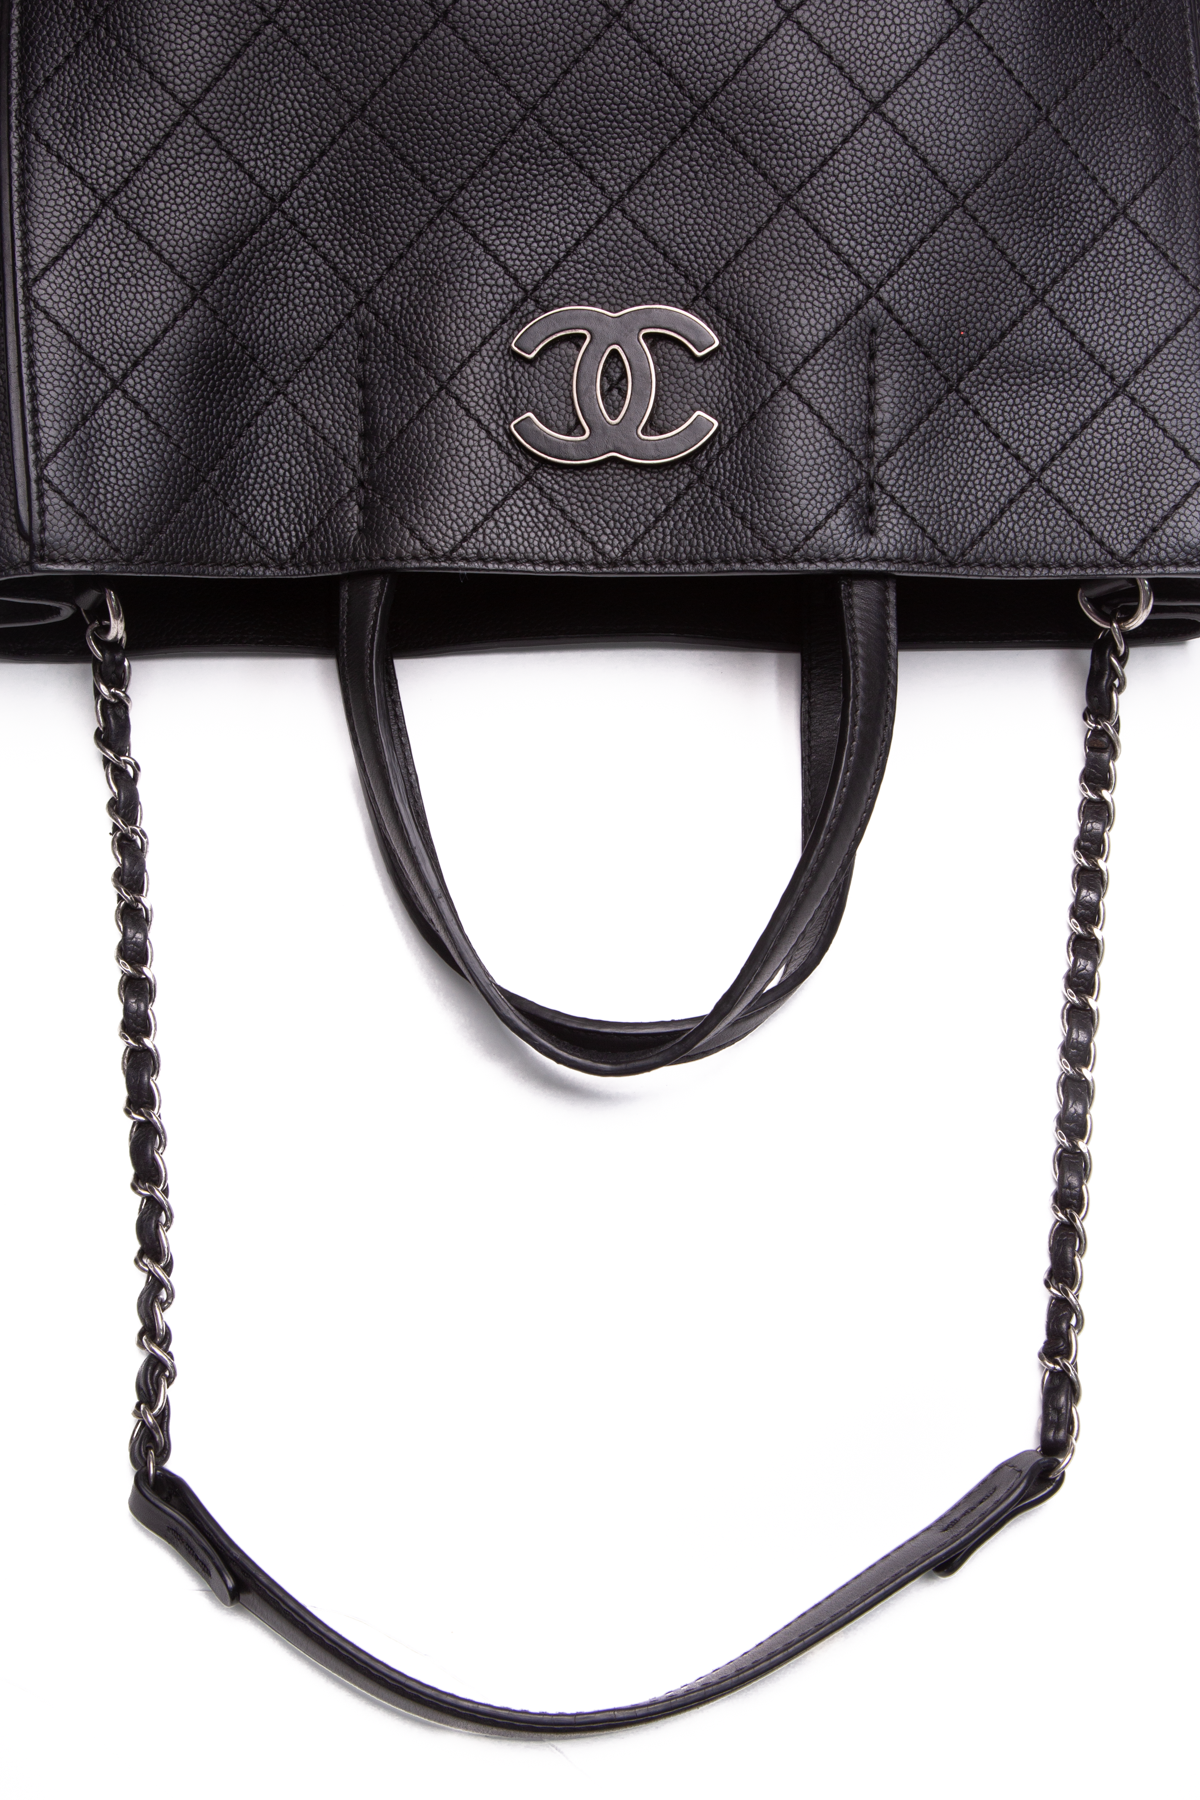 chanel all black handbag